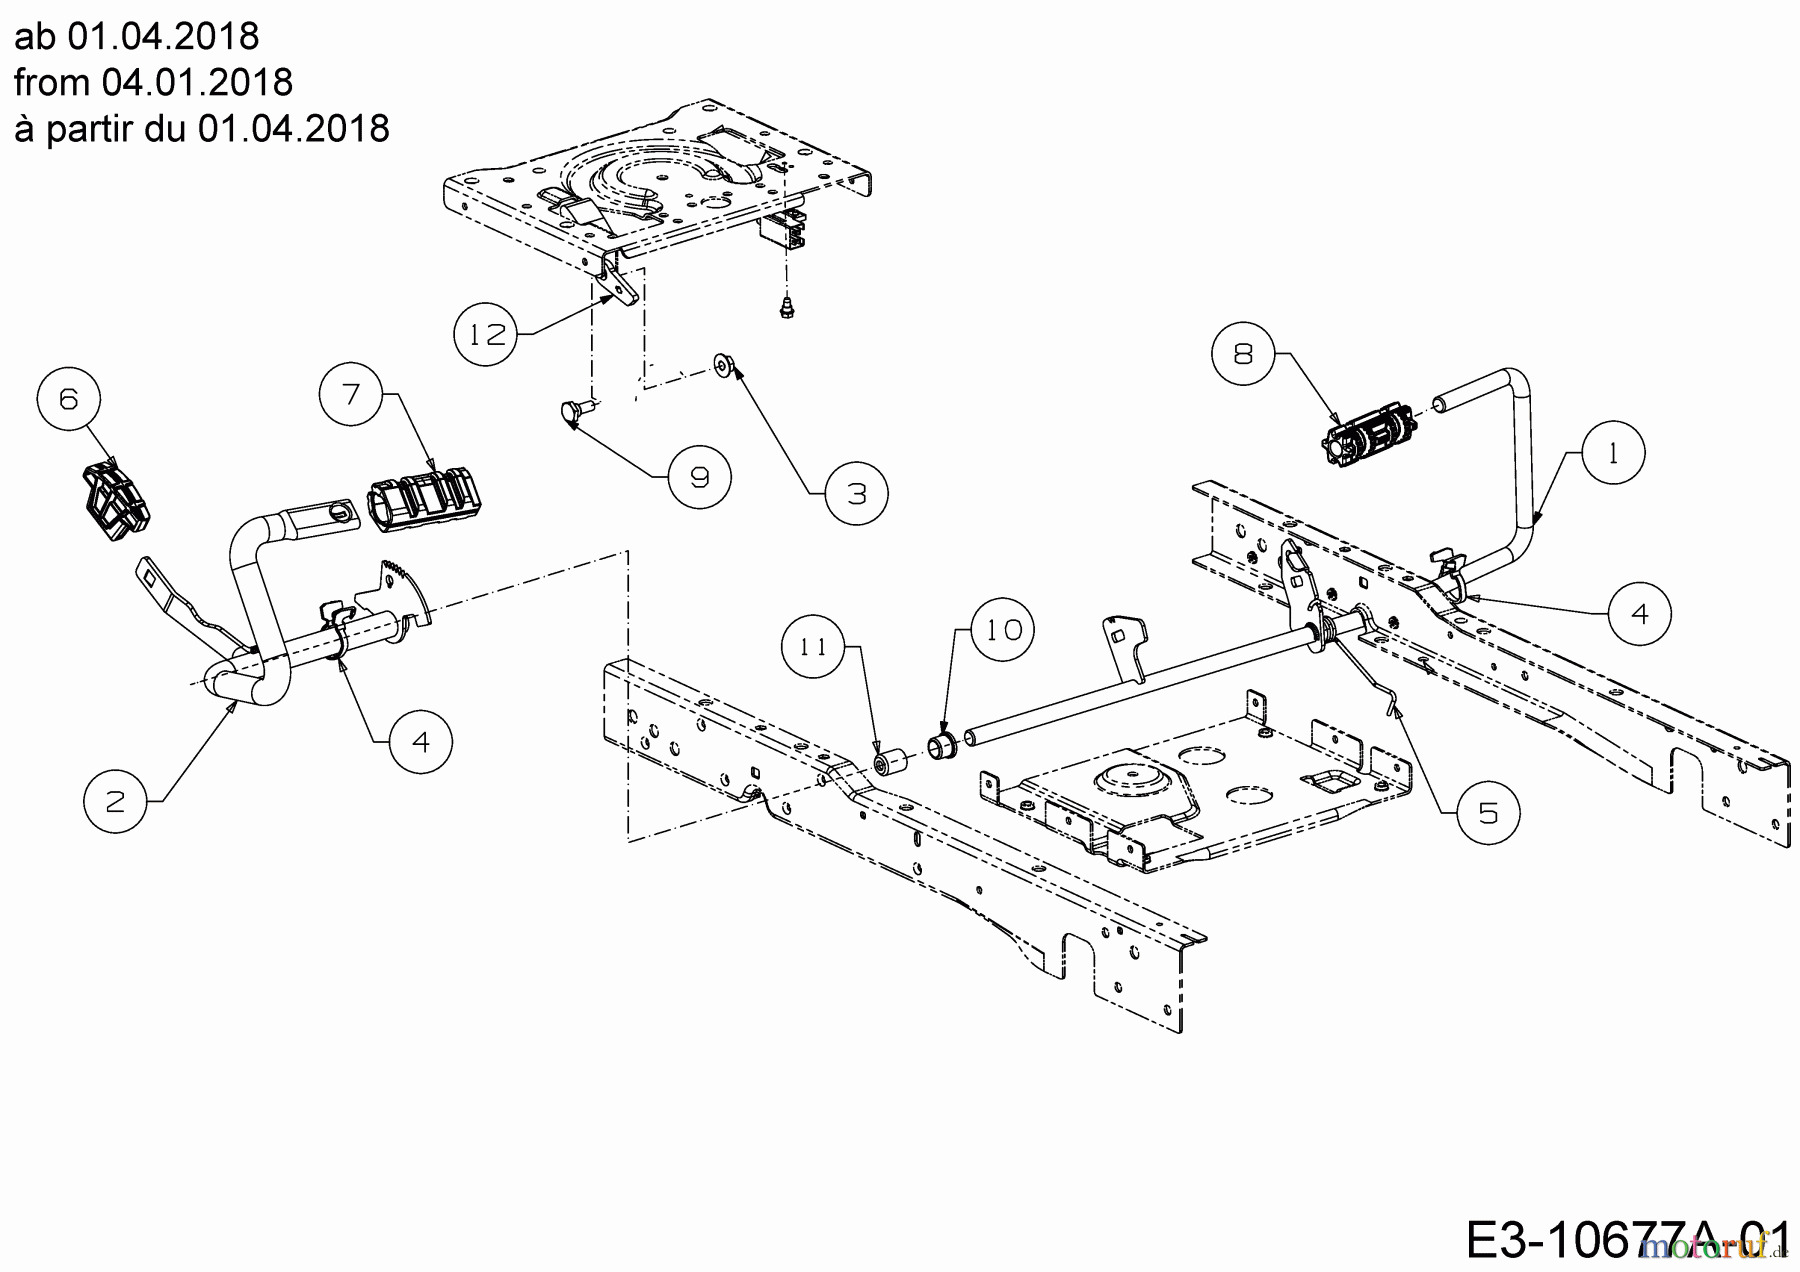  Cub Cadet Lawn tractors XT1 OS96 13B8A1CF603  (2019) Pedals from 04.01.2018